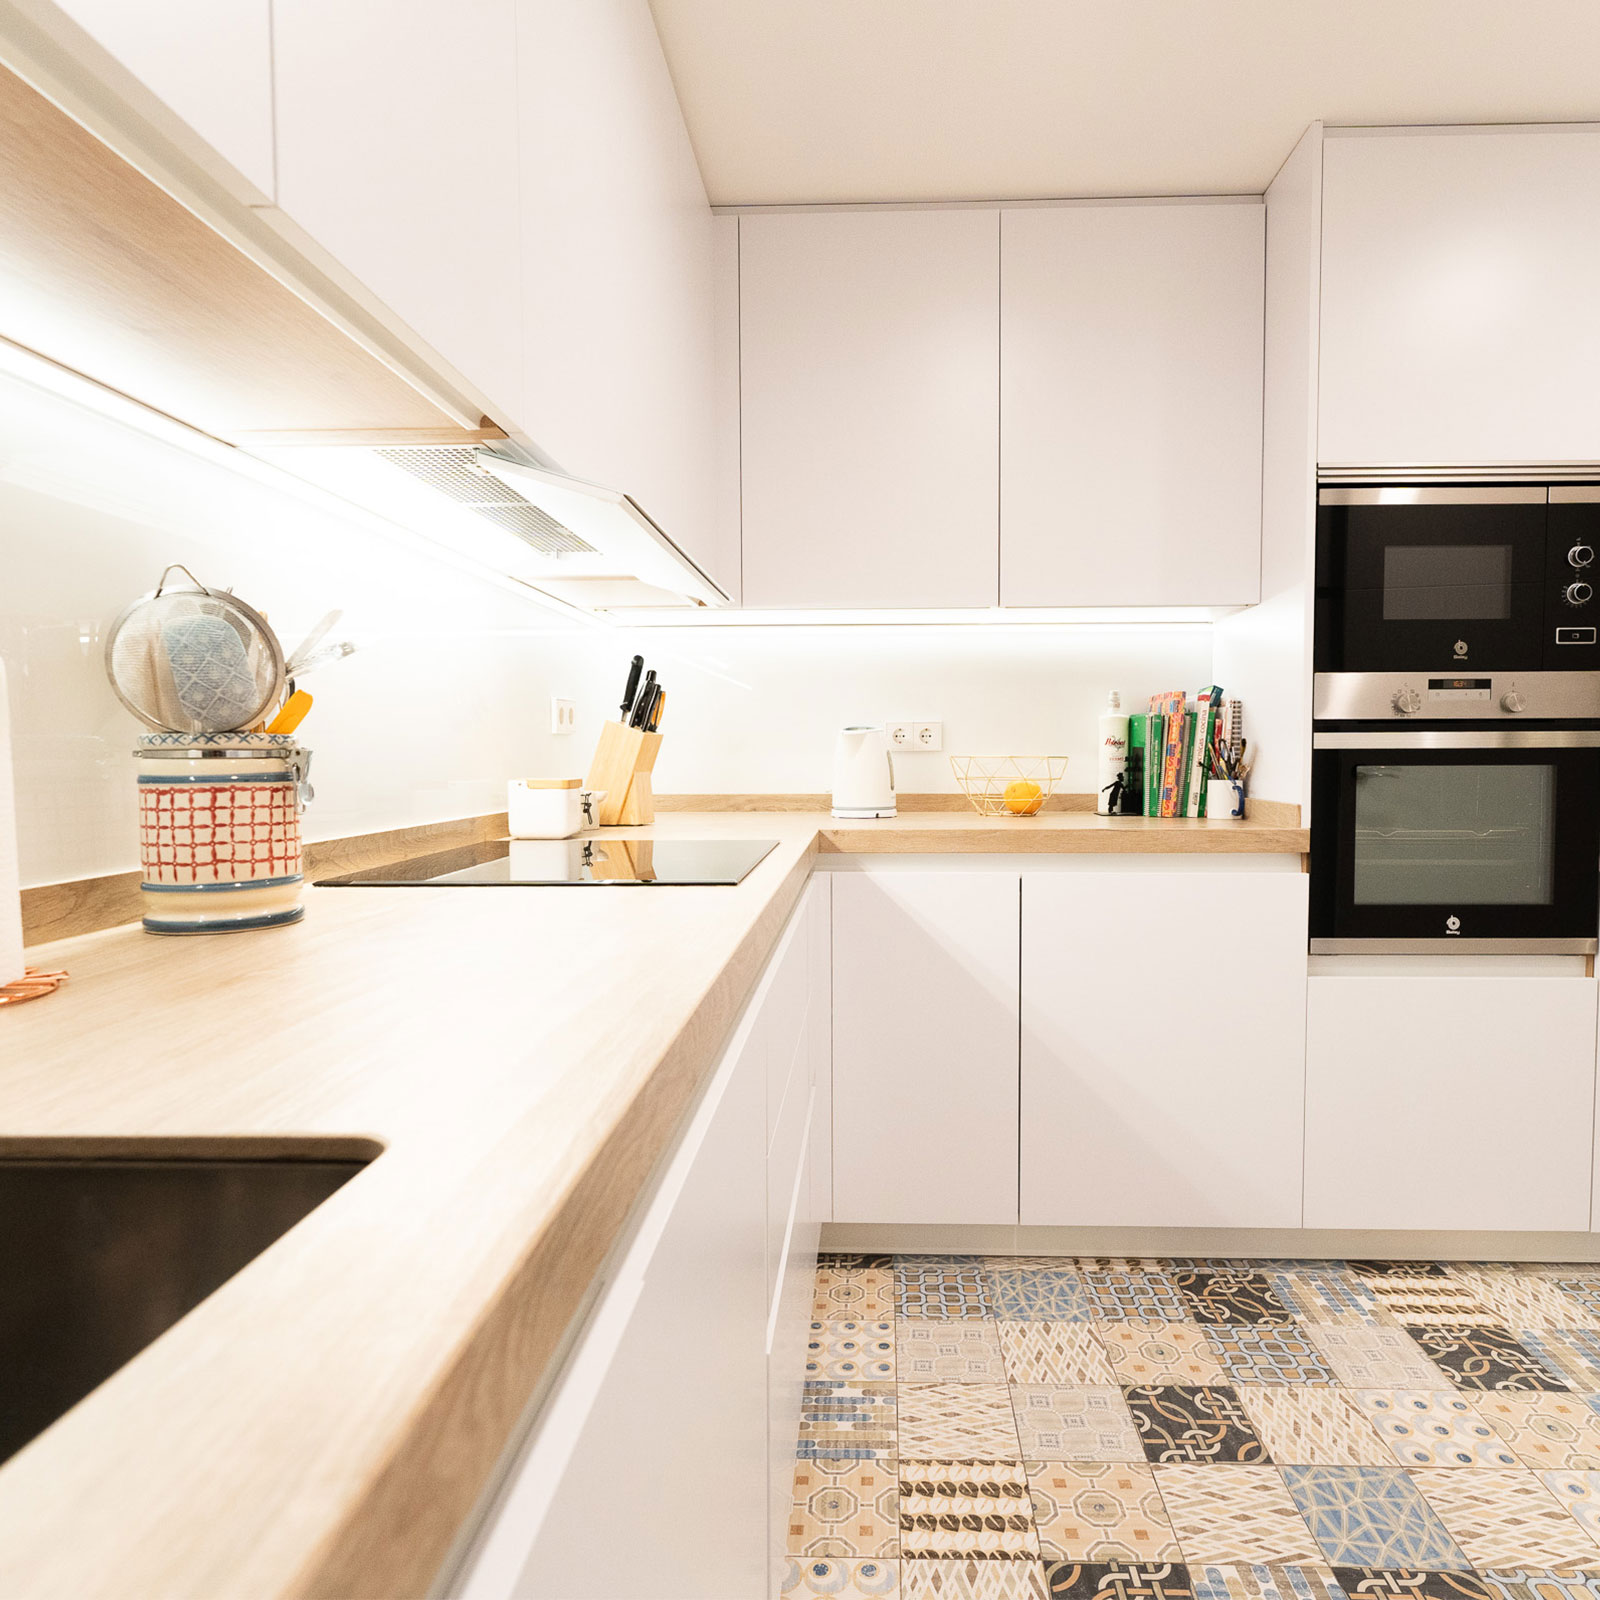 Cocina blanca y madera: Un diseño atemporal y funcional